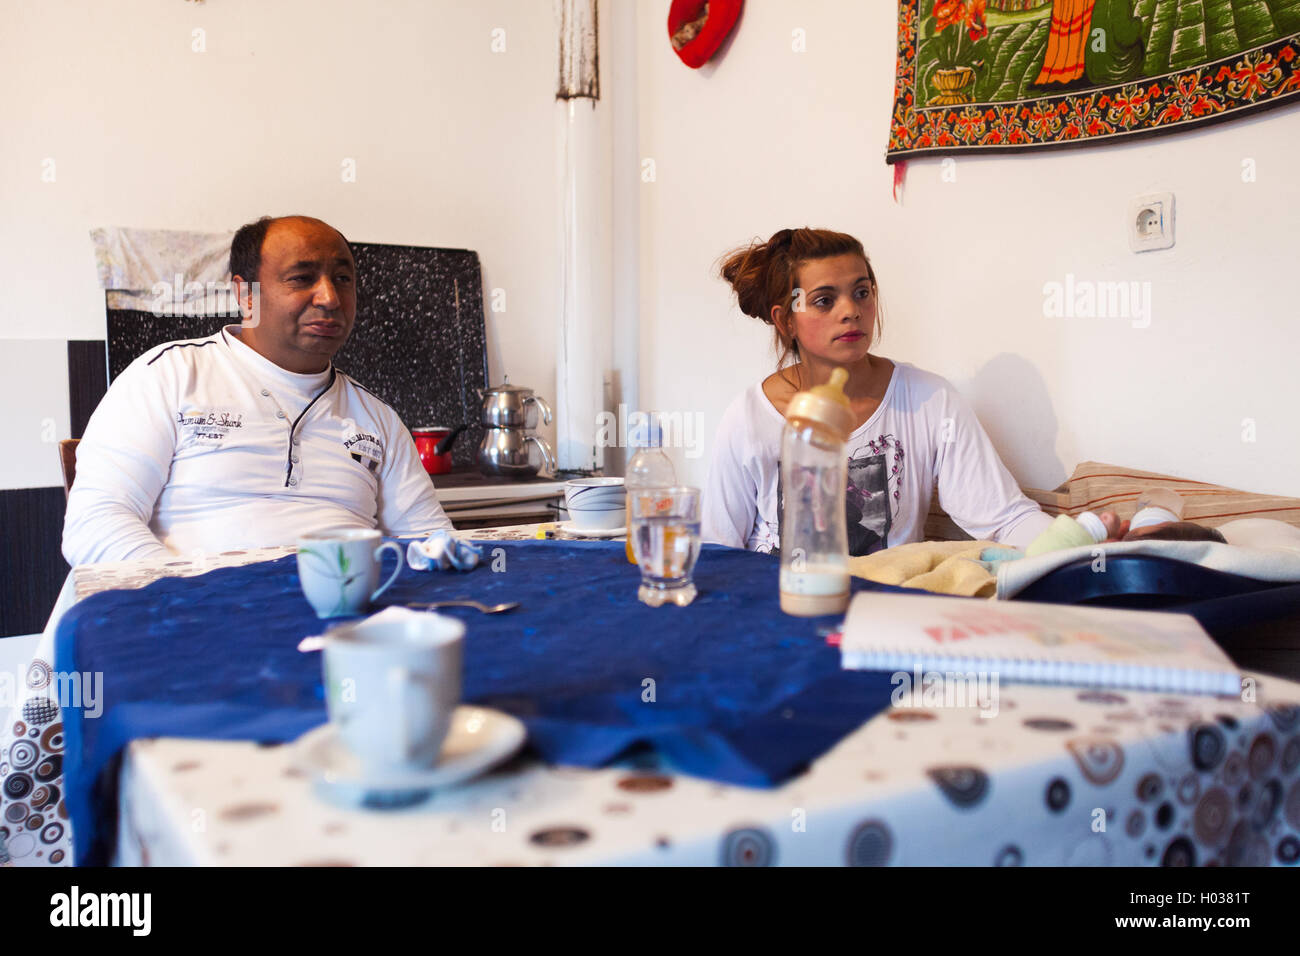 ZAGREB, Kroatien - 12. November 2013: Roma-Familie in ihrem Zuhause am Küchentisch sitzen. Stockfoto